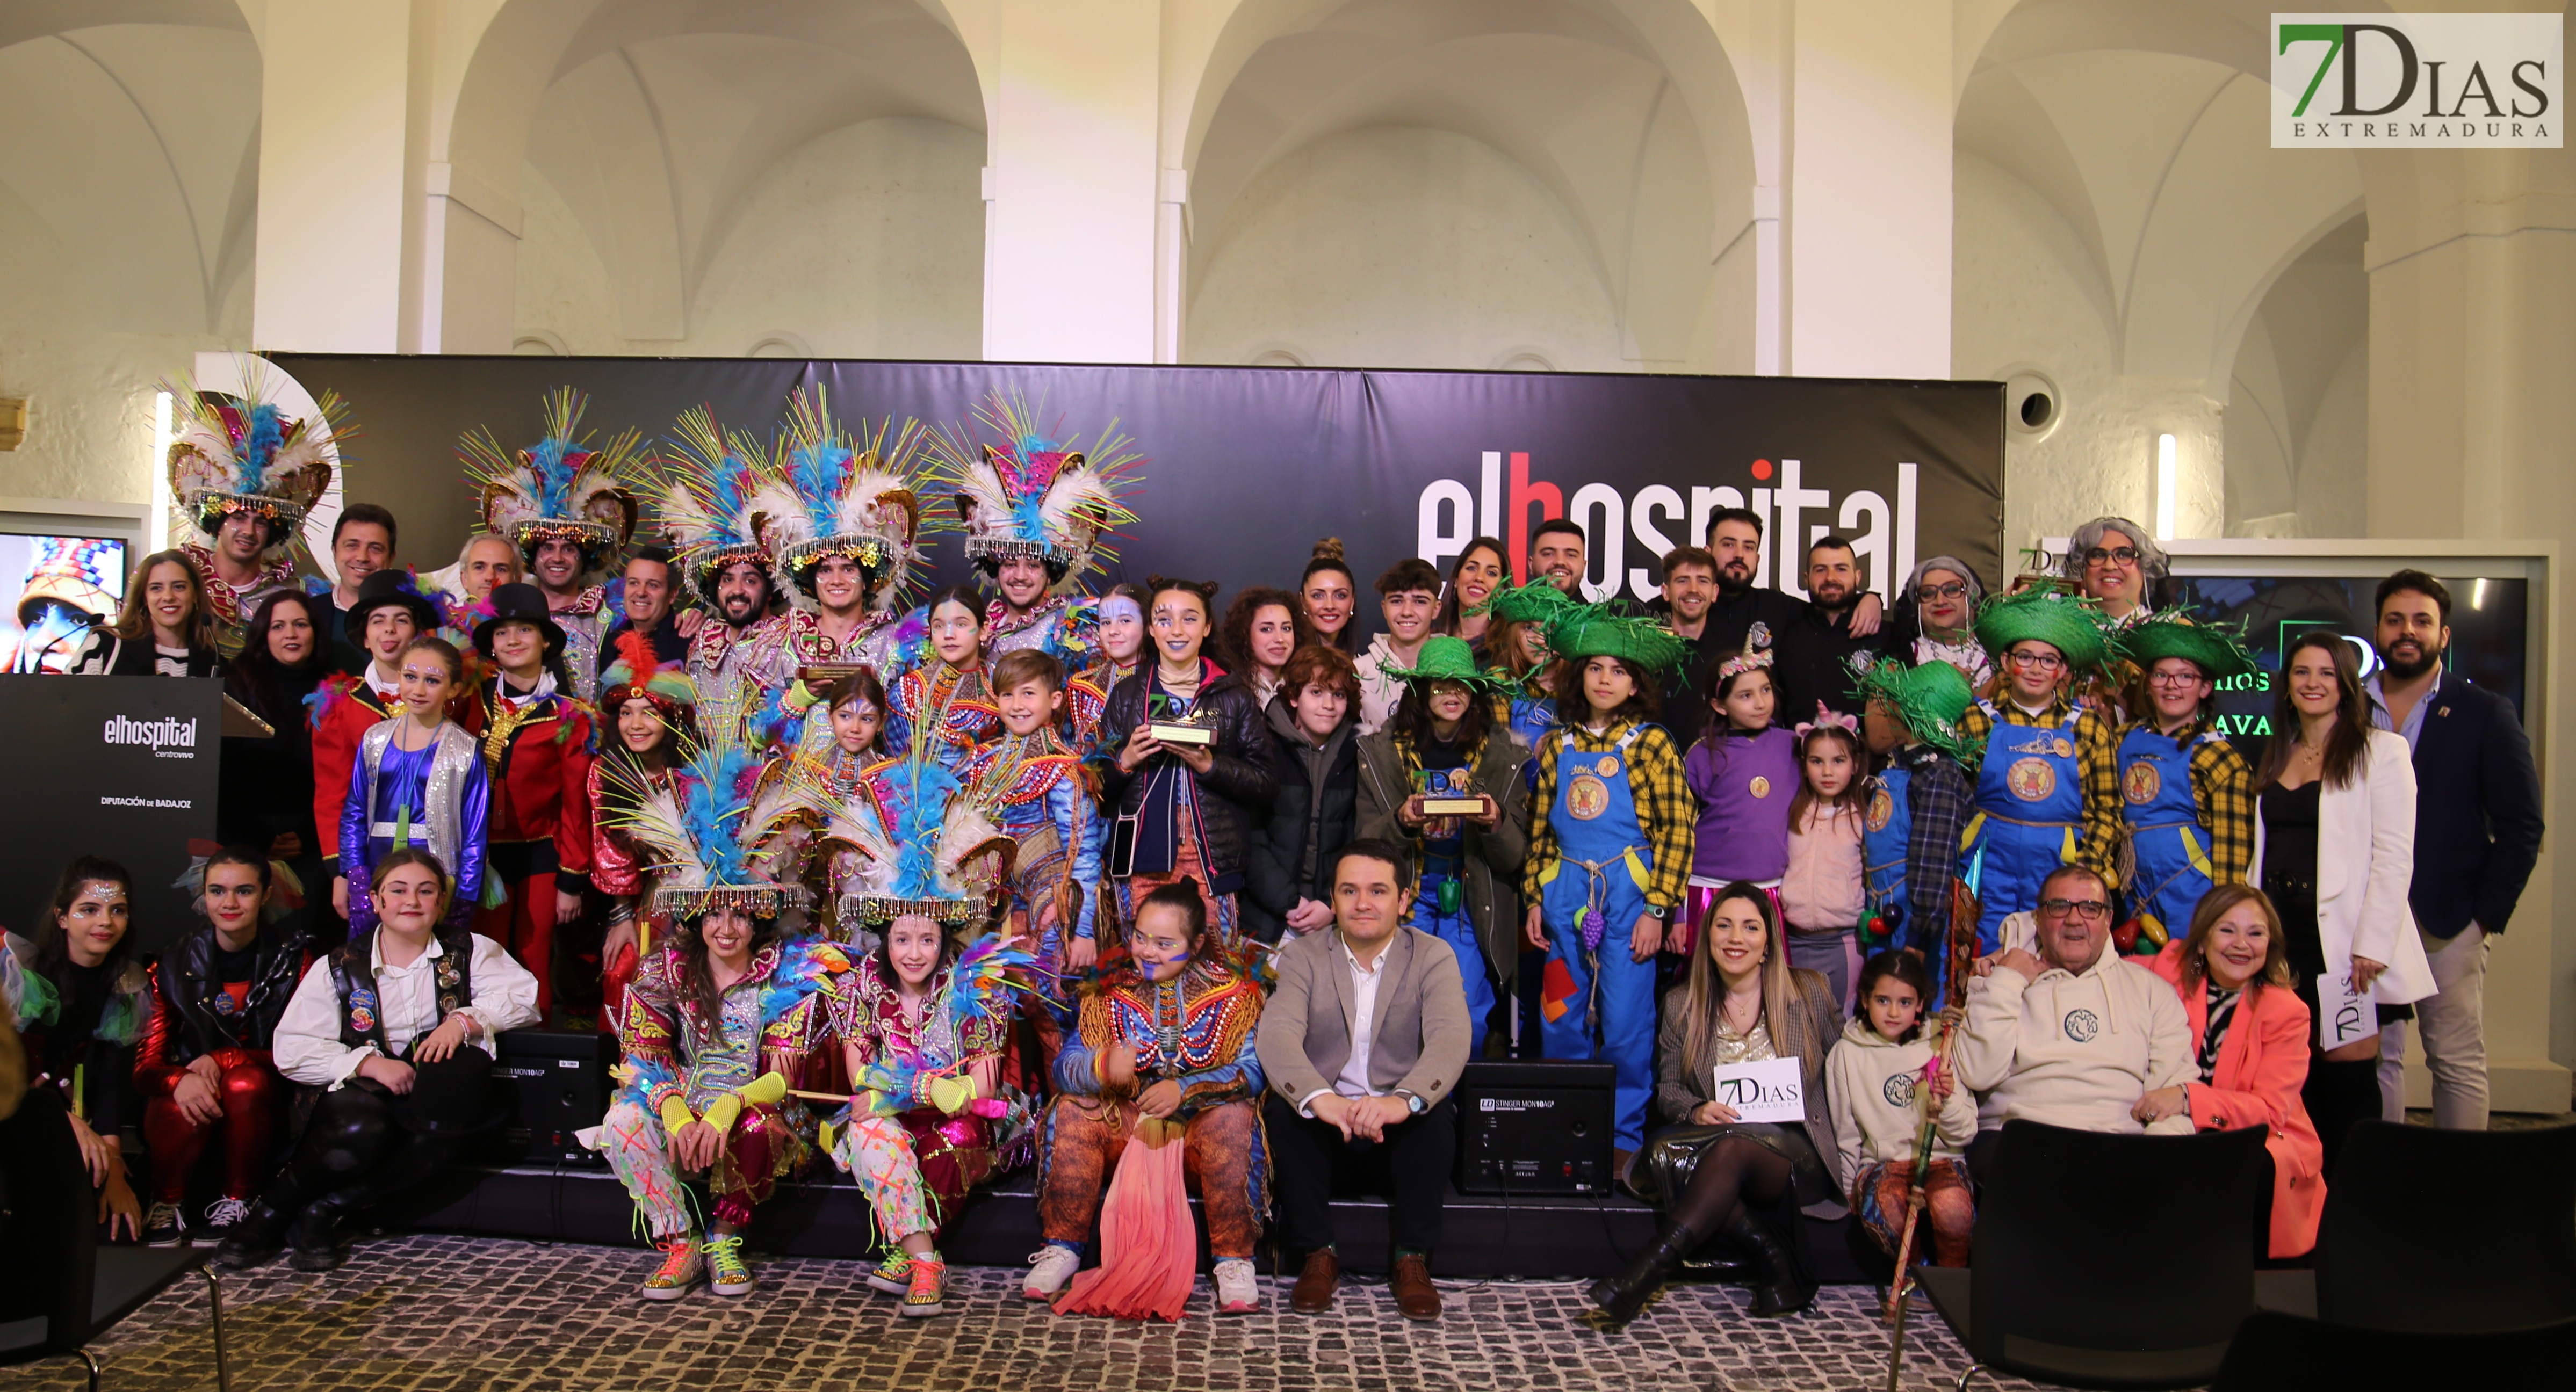 Así fue la Gala de la entrega de Premios 7Días al Carnaval de Badajoz